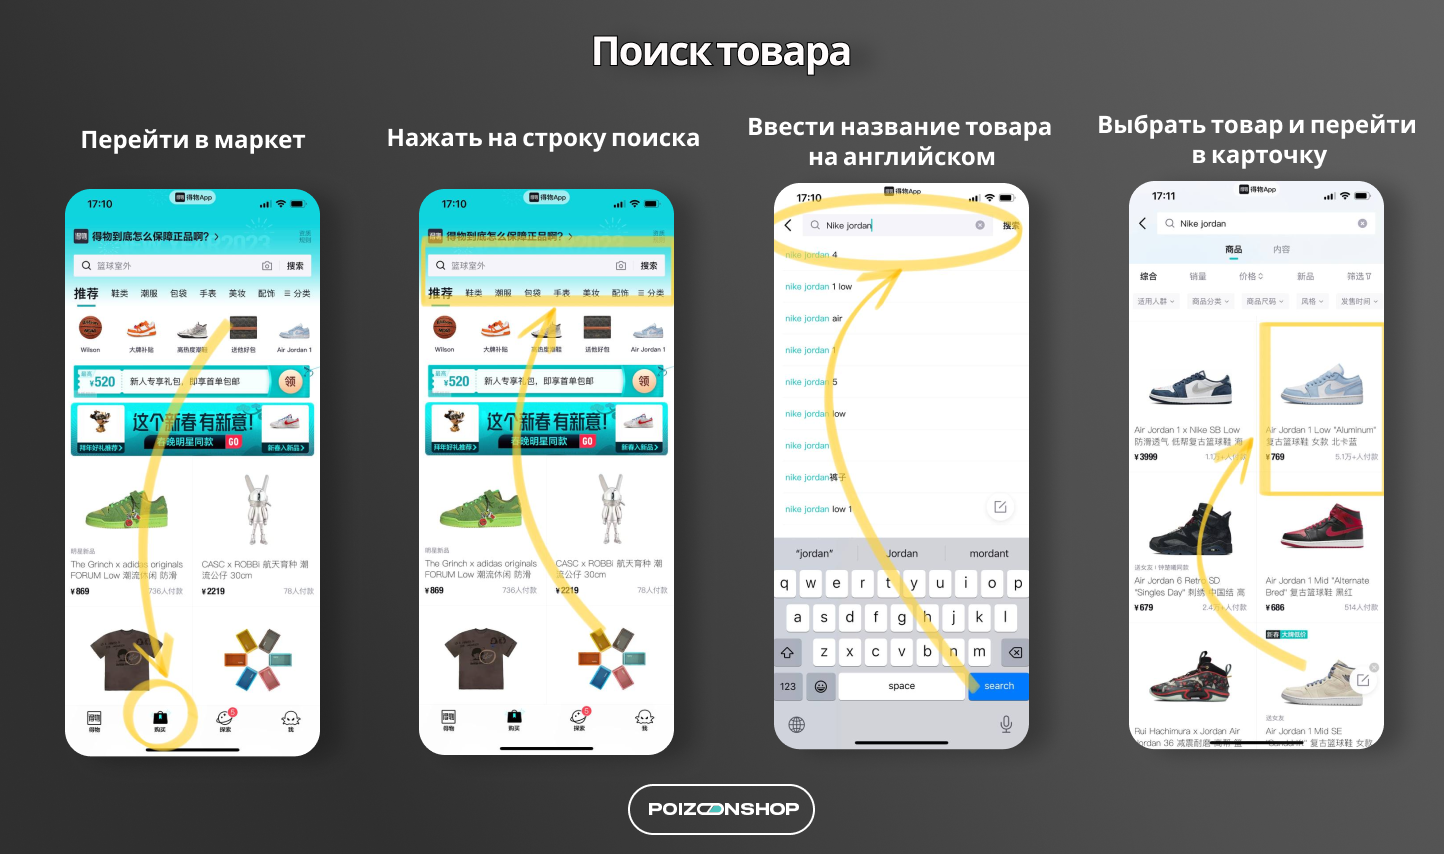 Сайт телеграмм официальный сайт на русском языке скачать бесплатно на телефон андроид фото 93